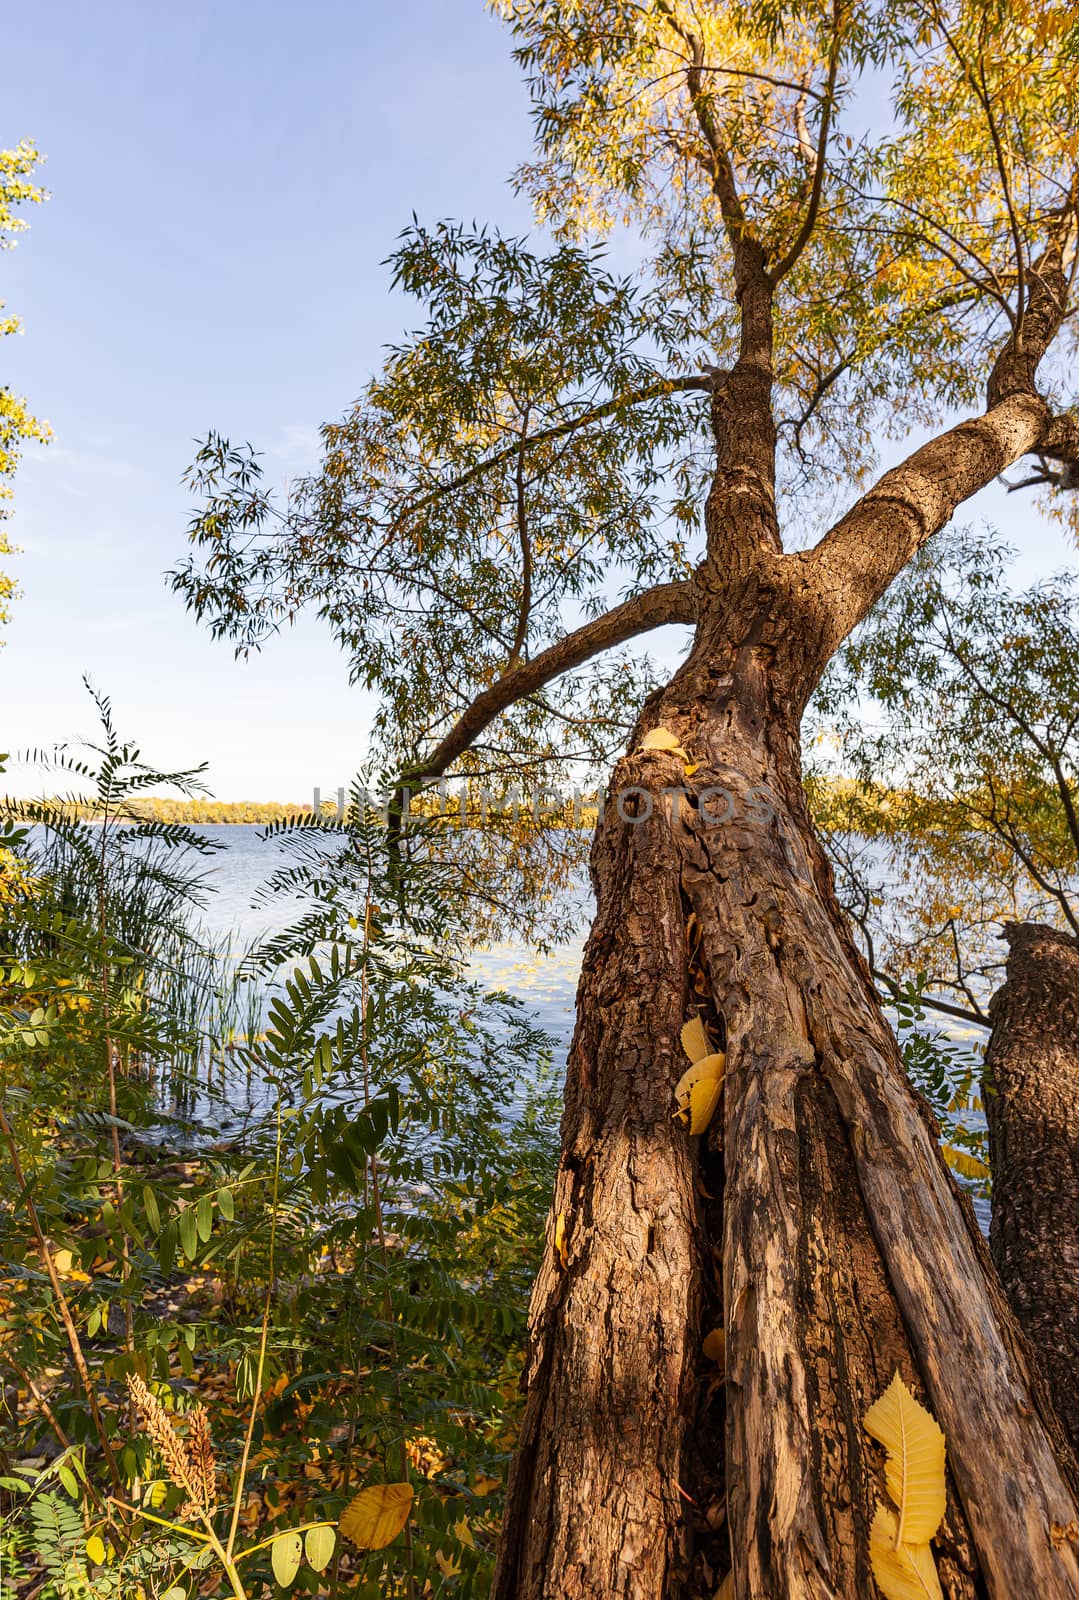 Willow tree over the Dniper river, in autumn, in the Obolon district of Kiev, Ukraine